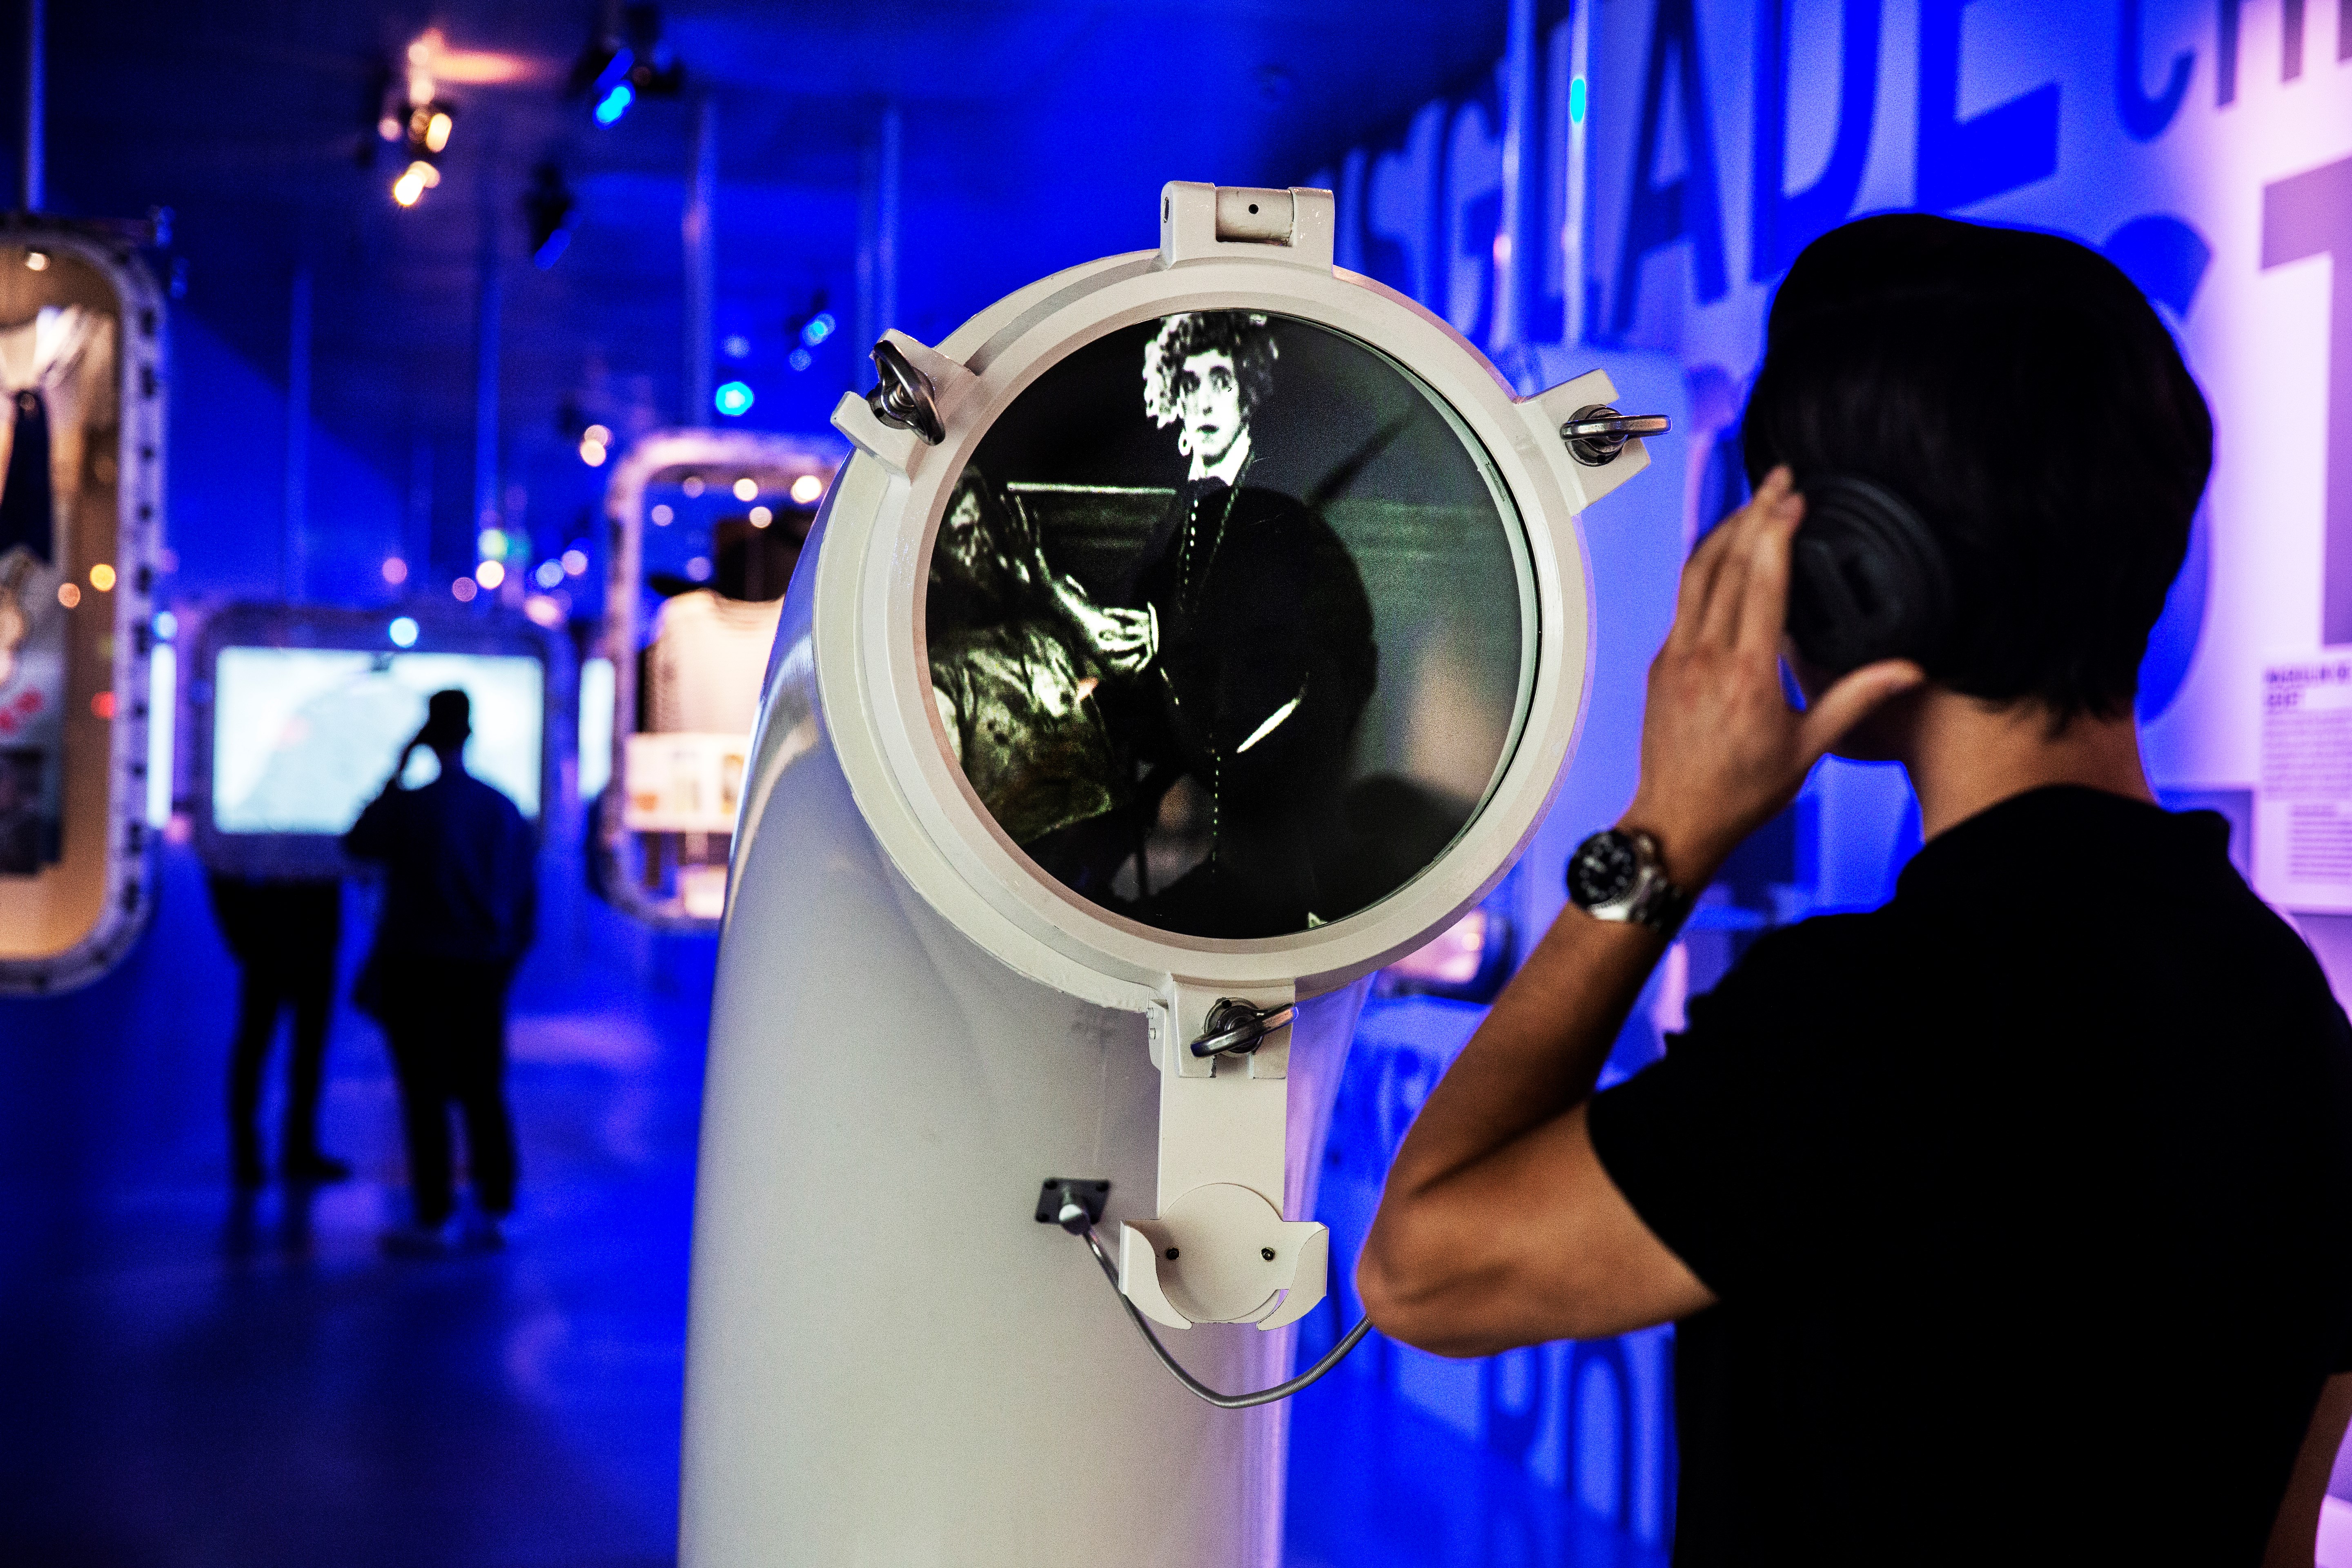 Mand lytter til visuel fremstilling på et museum